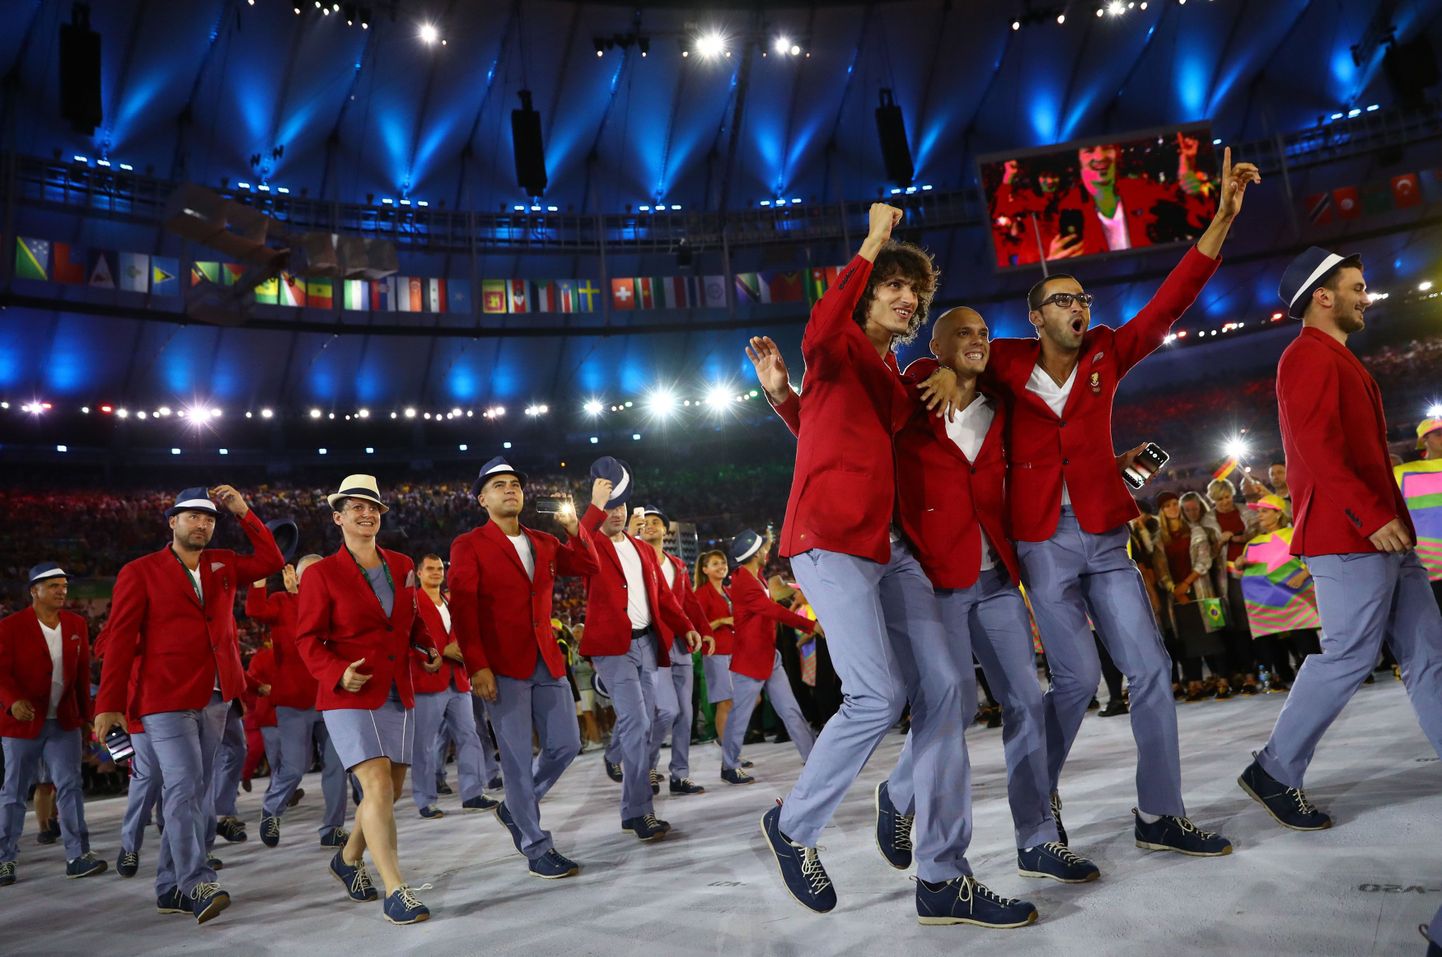 Bulgaaria olümpiadelegatsioon Rio mängude avatseremoonial